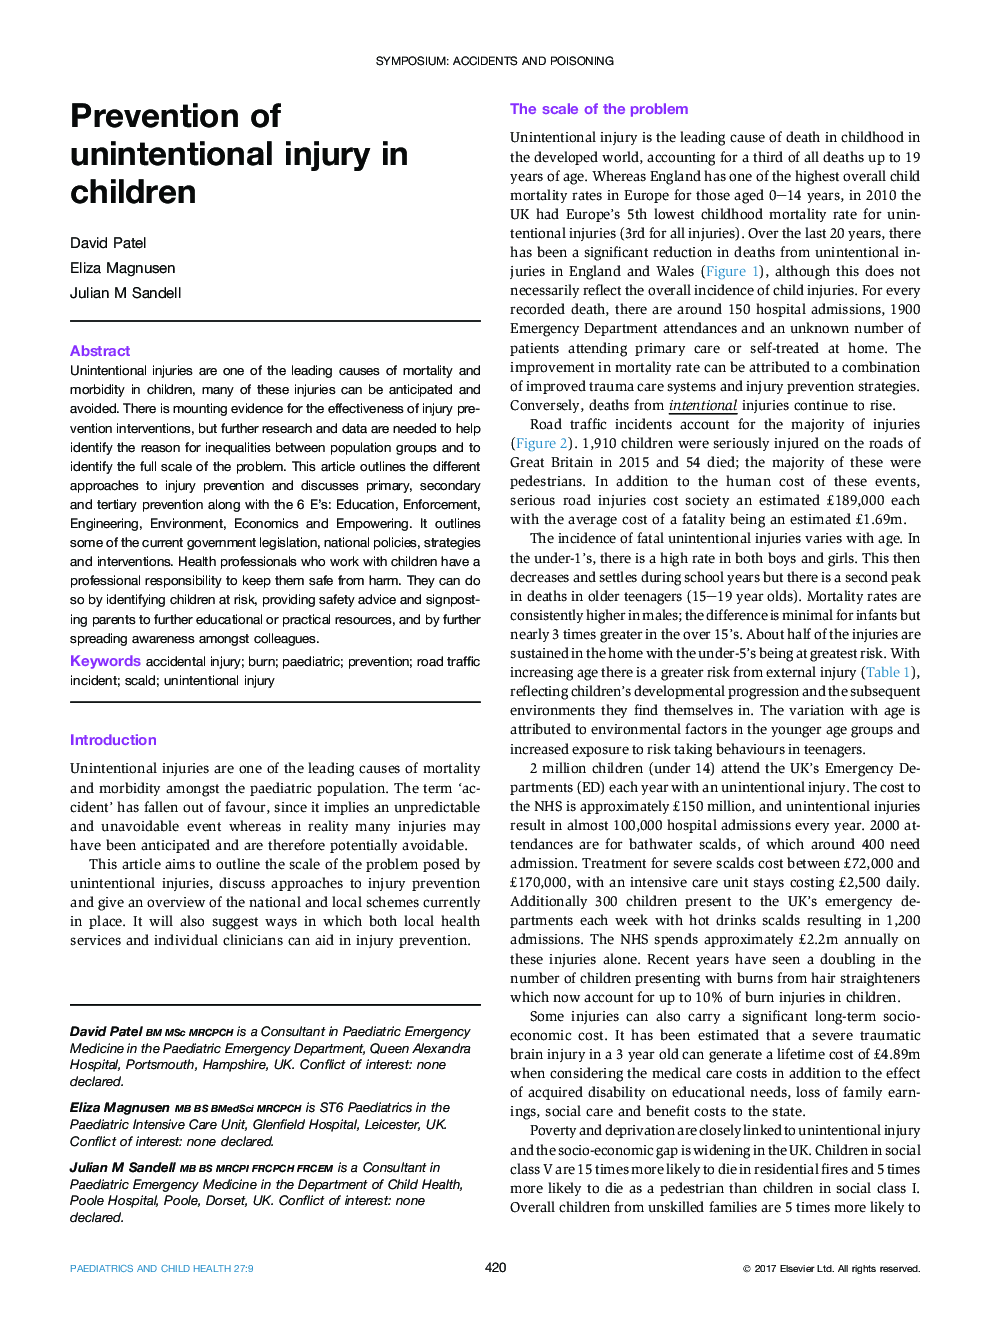 سمپوزیوم: حوادث و مسمومیت پیشگیری از آسیب های غیر عمدی در کودکان 